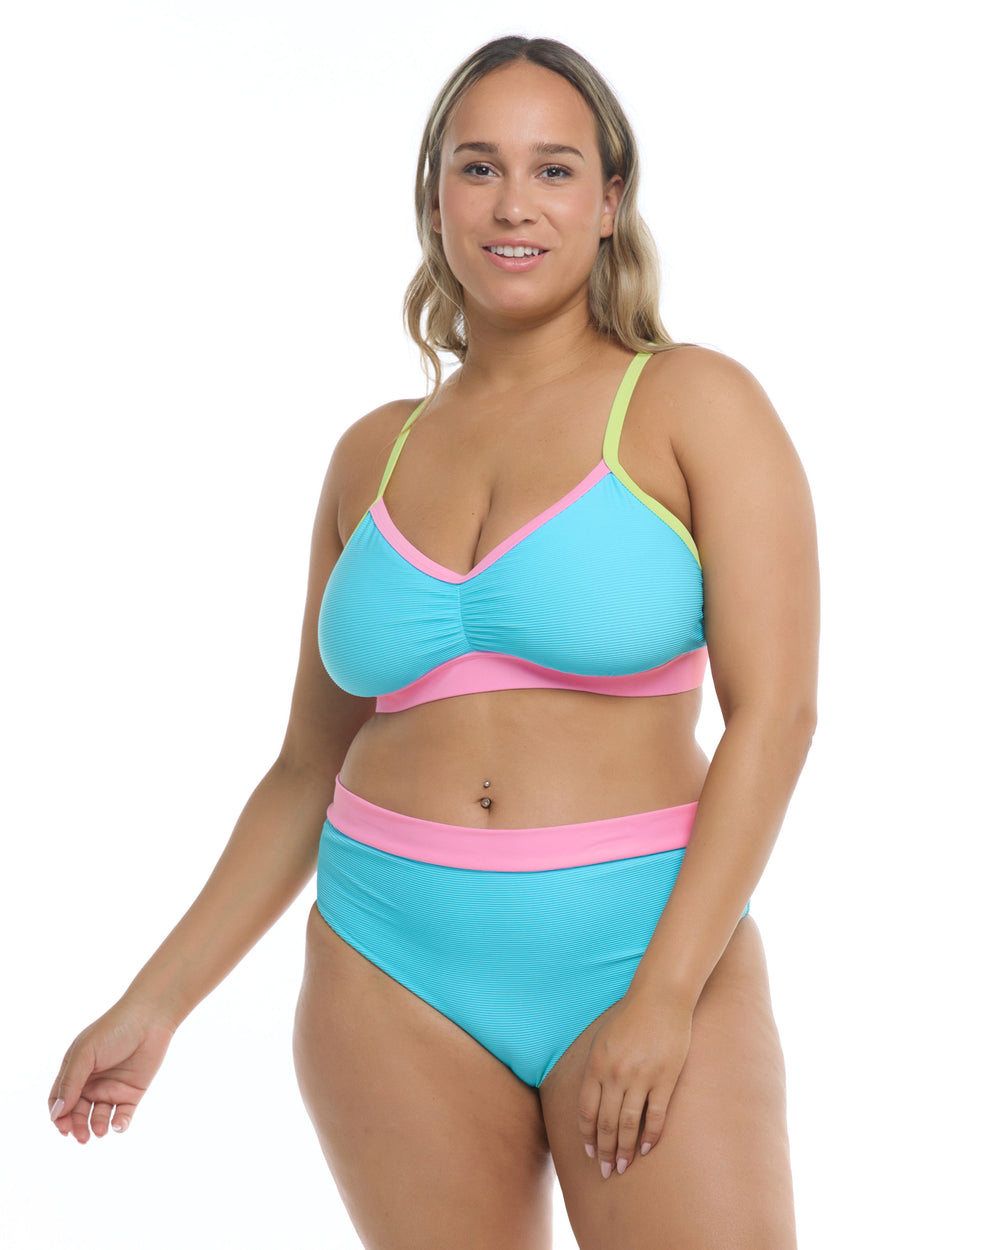 Body Glove Swimwear Ibiza Drew Plus Size Clearwater Bikini Top 39-4691 –  The Bra Genie